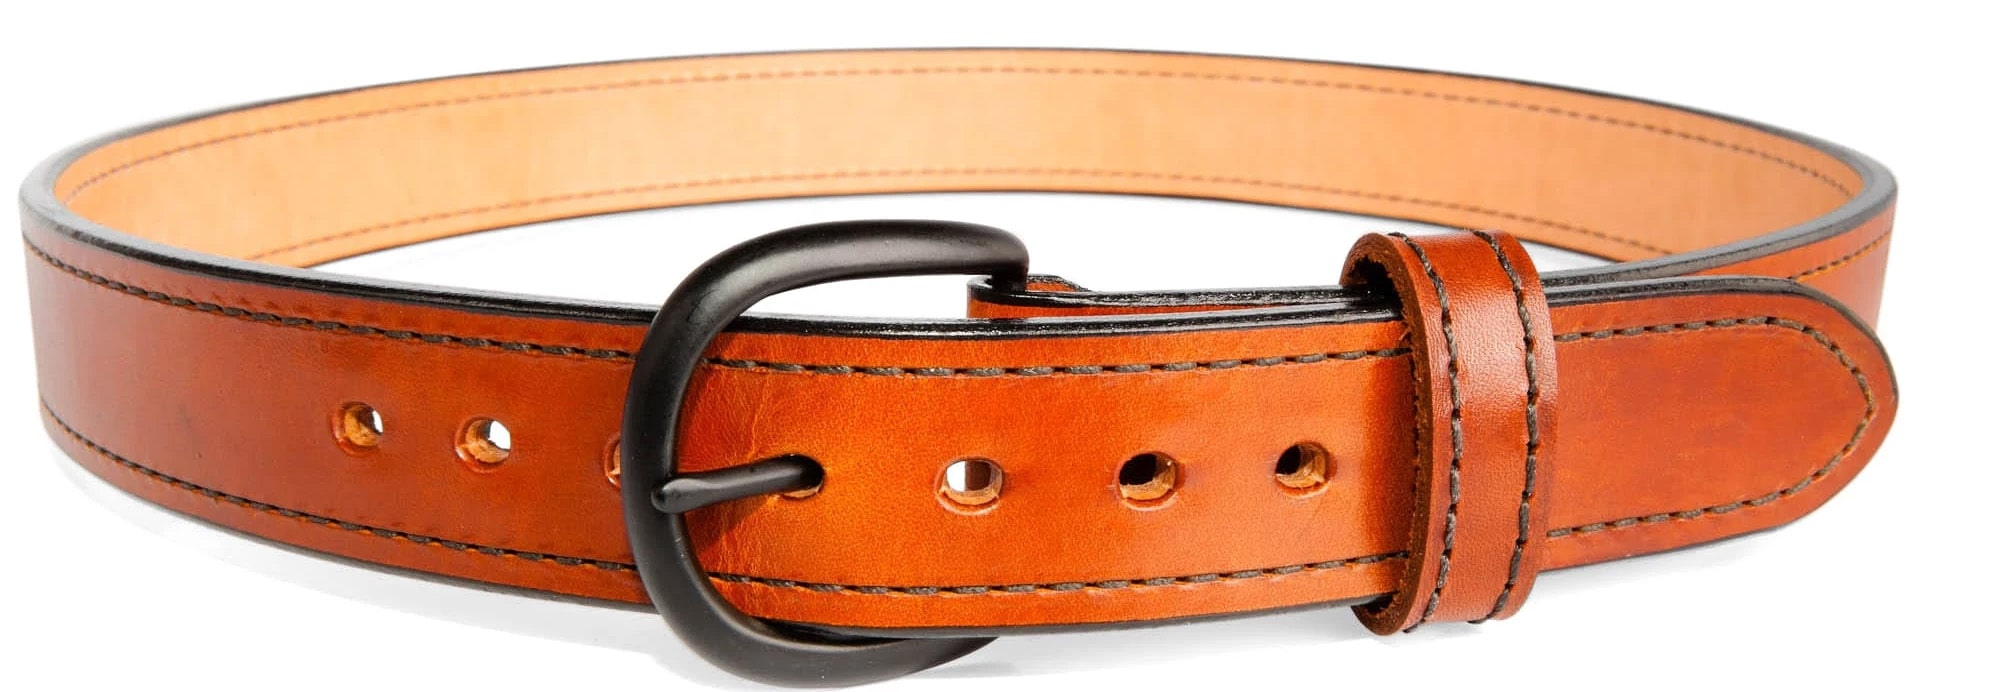 Beltman 1.25 Horsehide belt